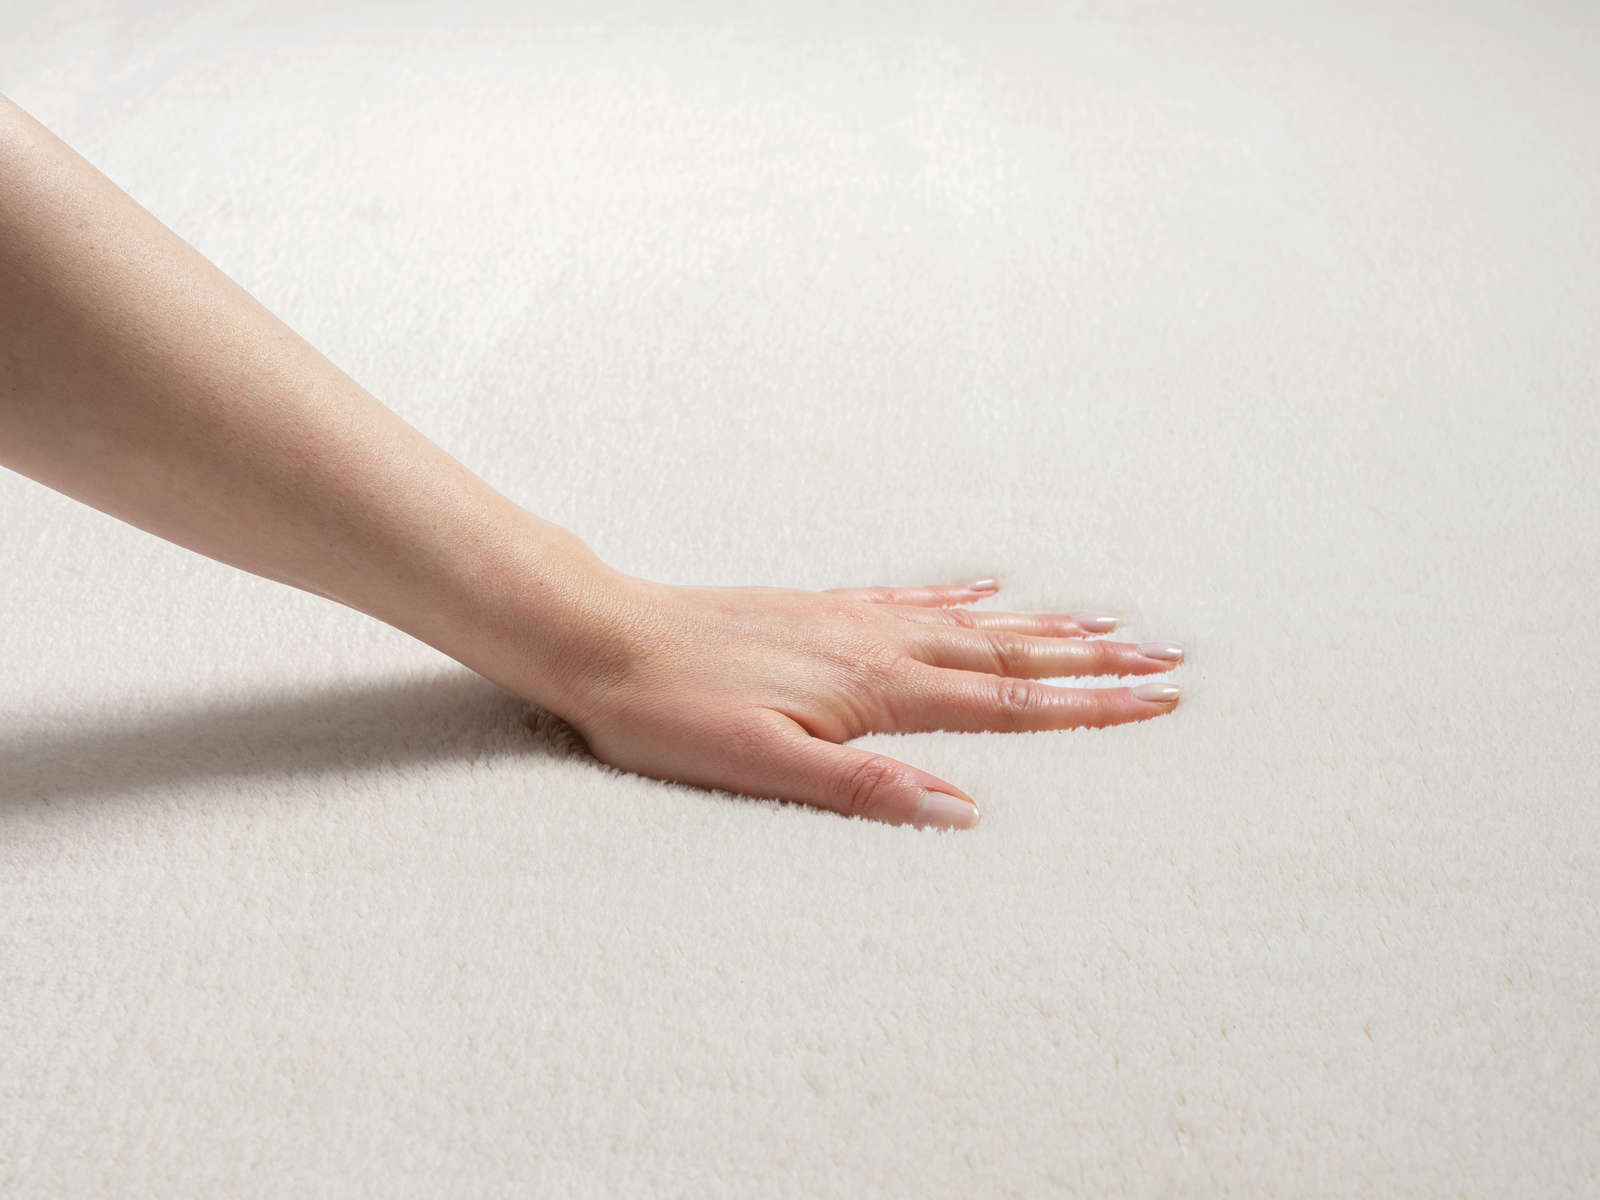             Fashionable high pile carpet in cream - 150 x 80 cm
        